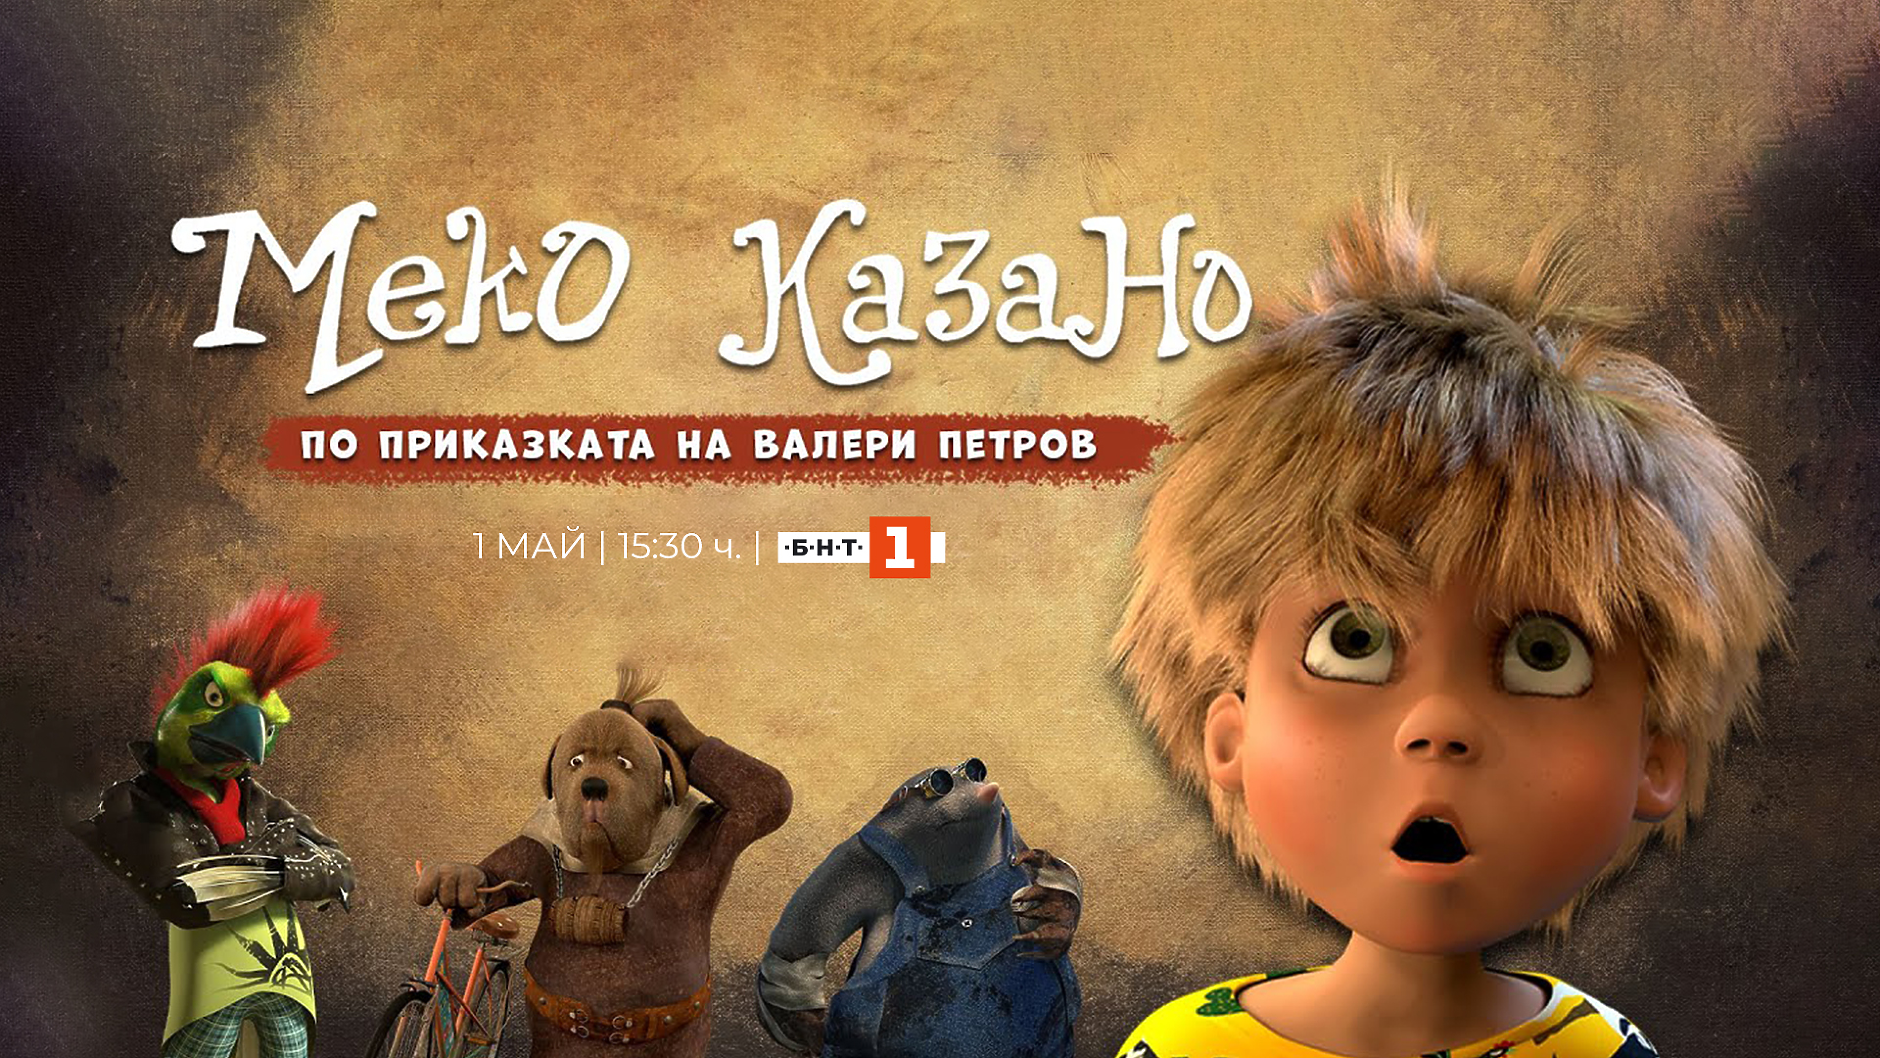 Първият български пълнометражен 3D филм  „Меко казано“ с премиера по БНТ